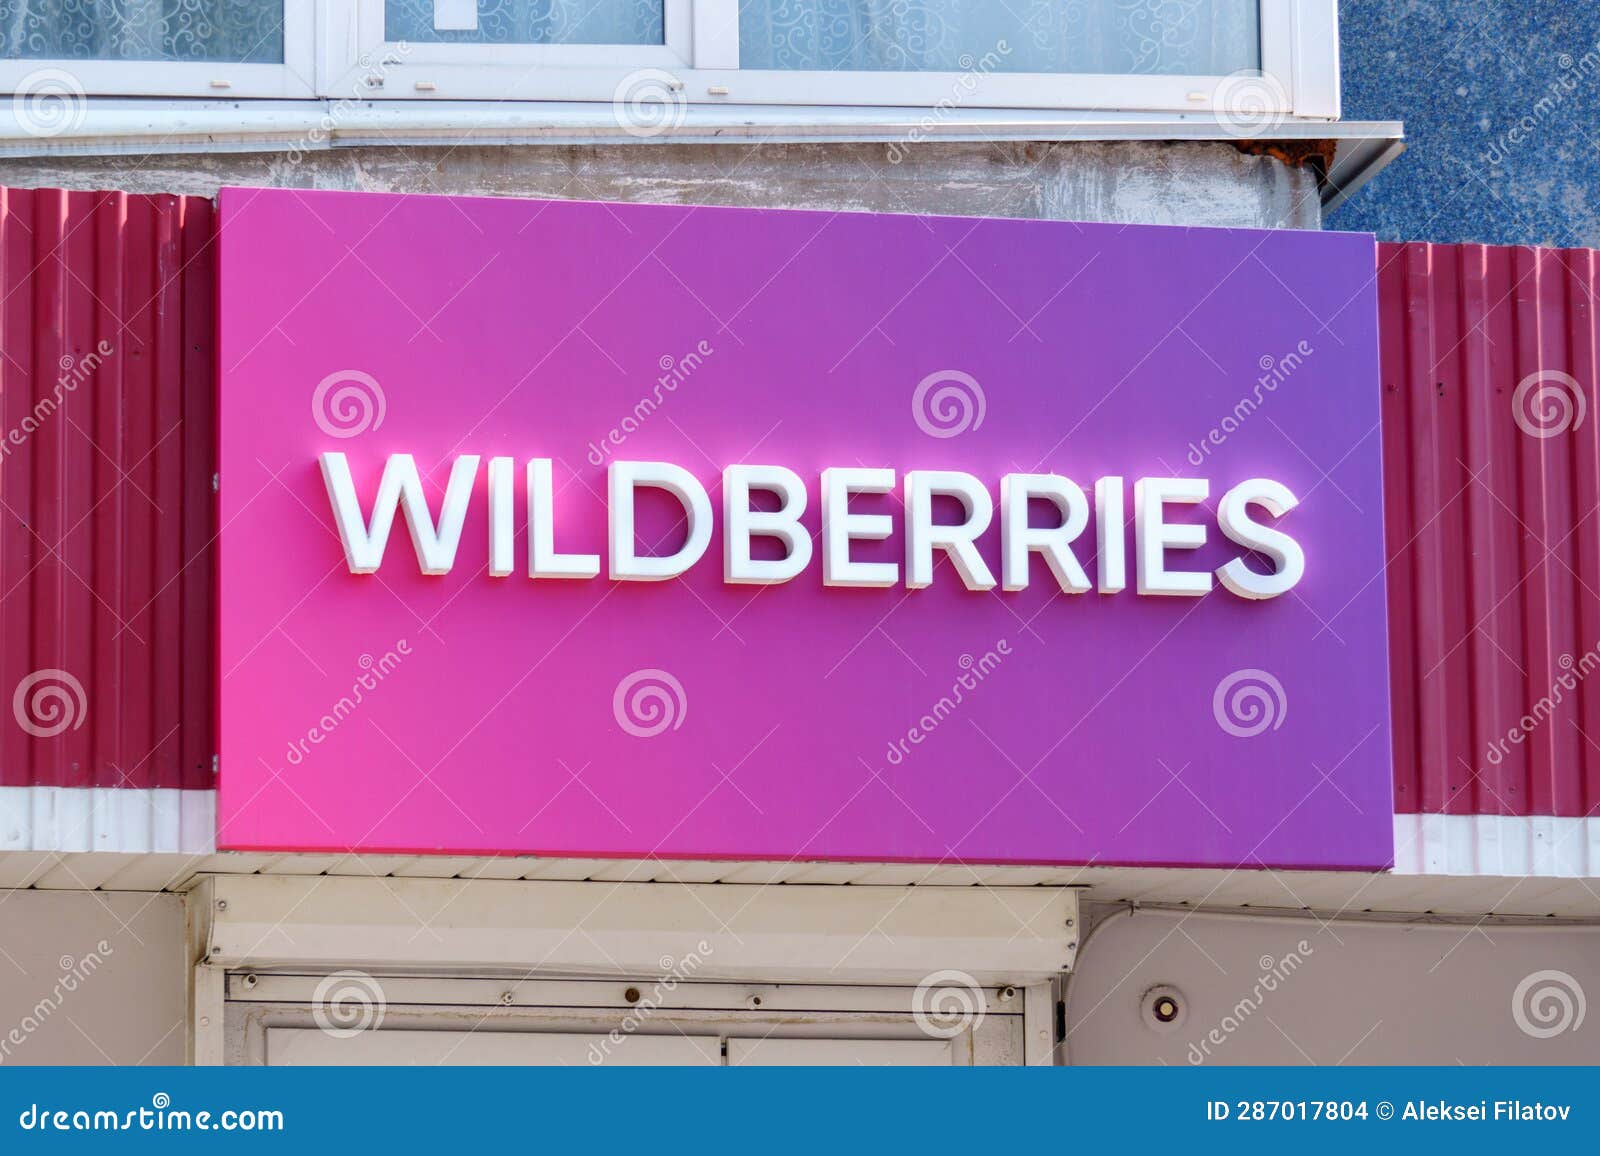 Wildberries Mobile Stock Photos - Free & Royalty-Free Stock Photos